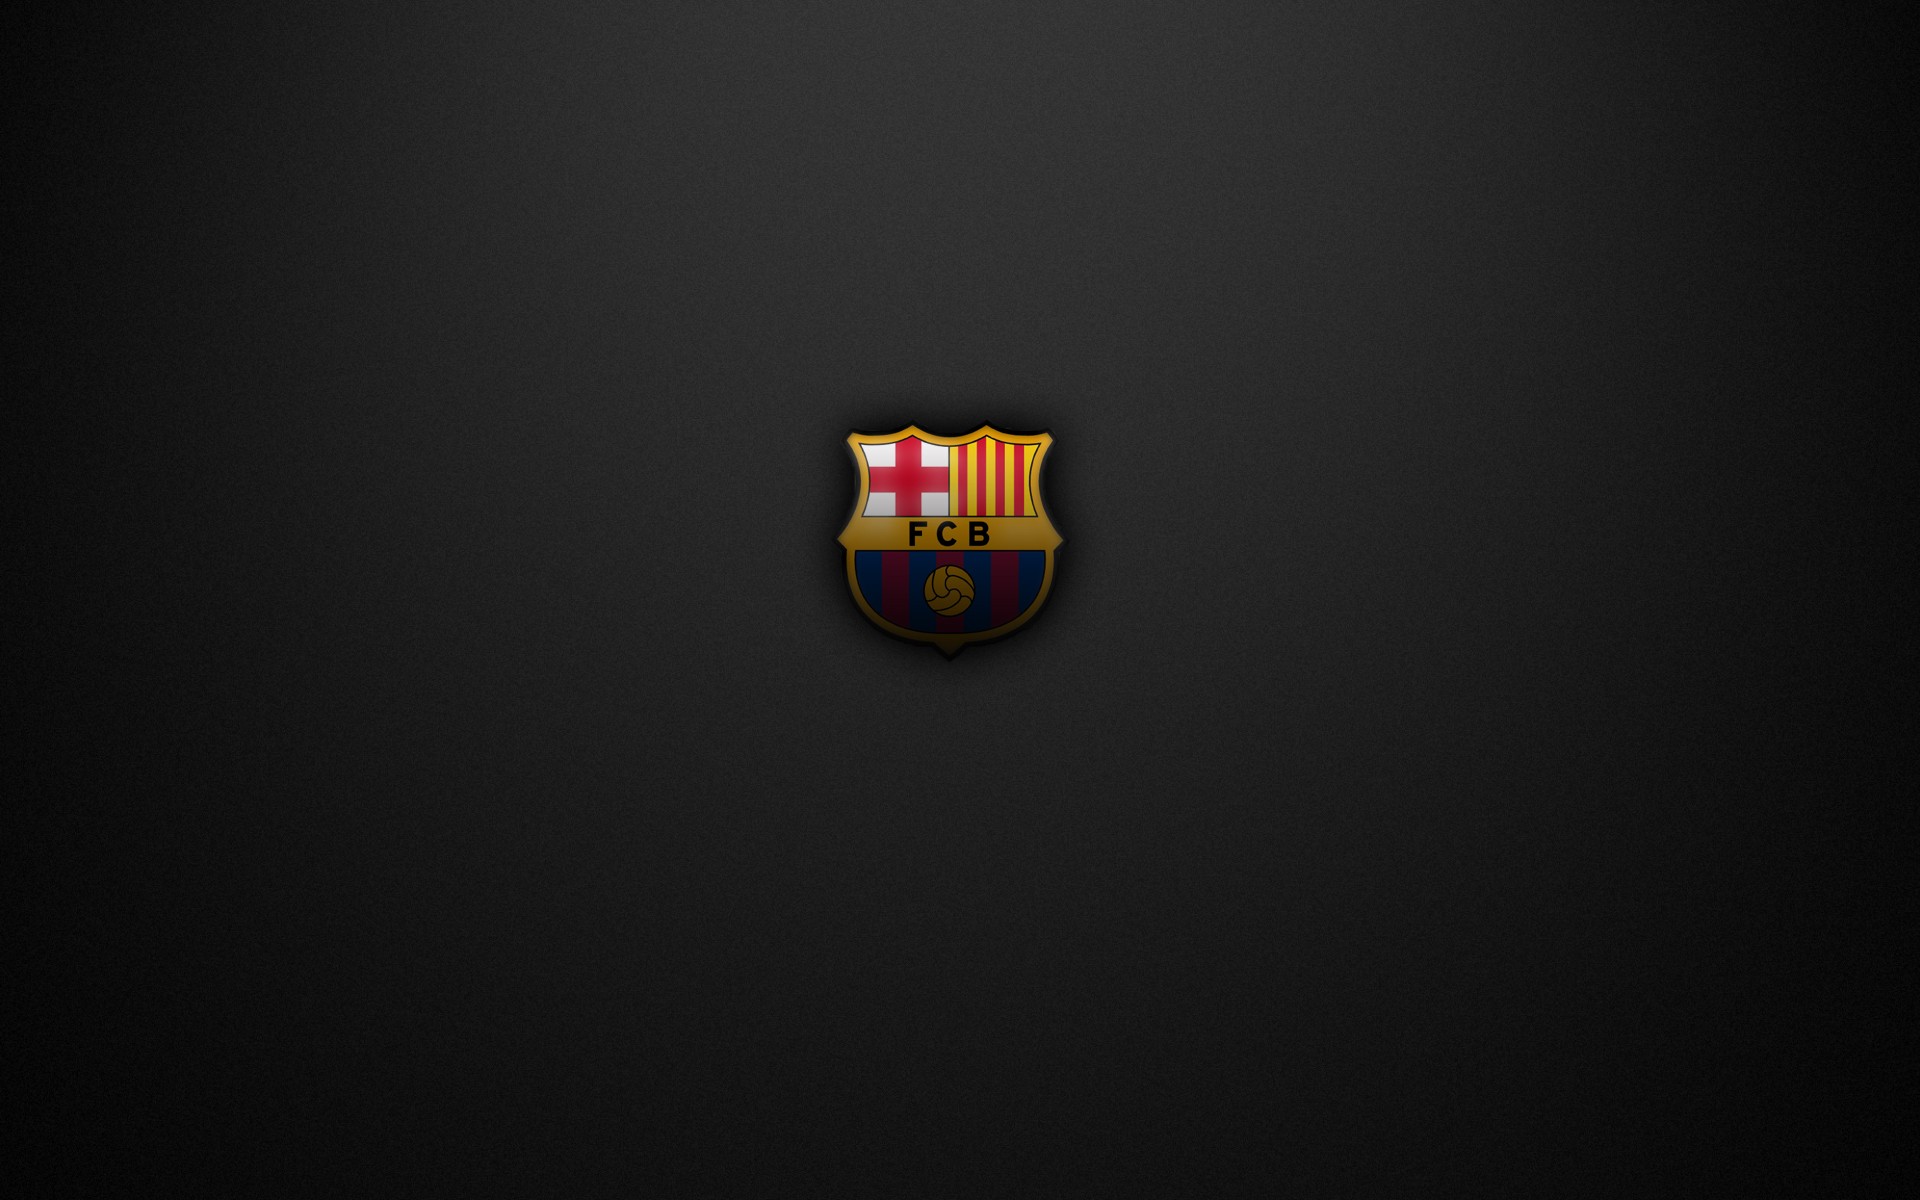 Fc Barcelona Crest Soccer Logo Wallpapers Hd Desktop And Mobile Backgrounds